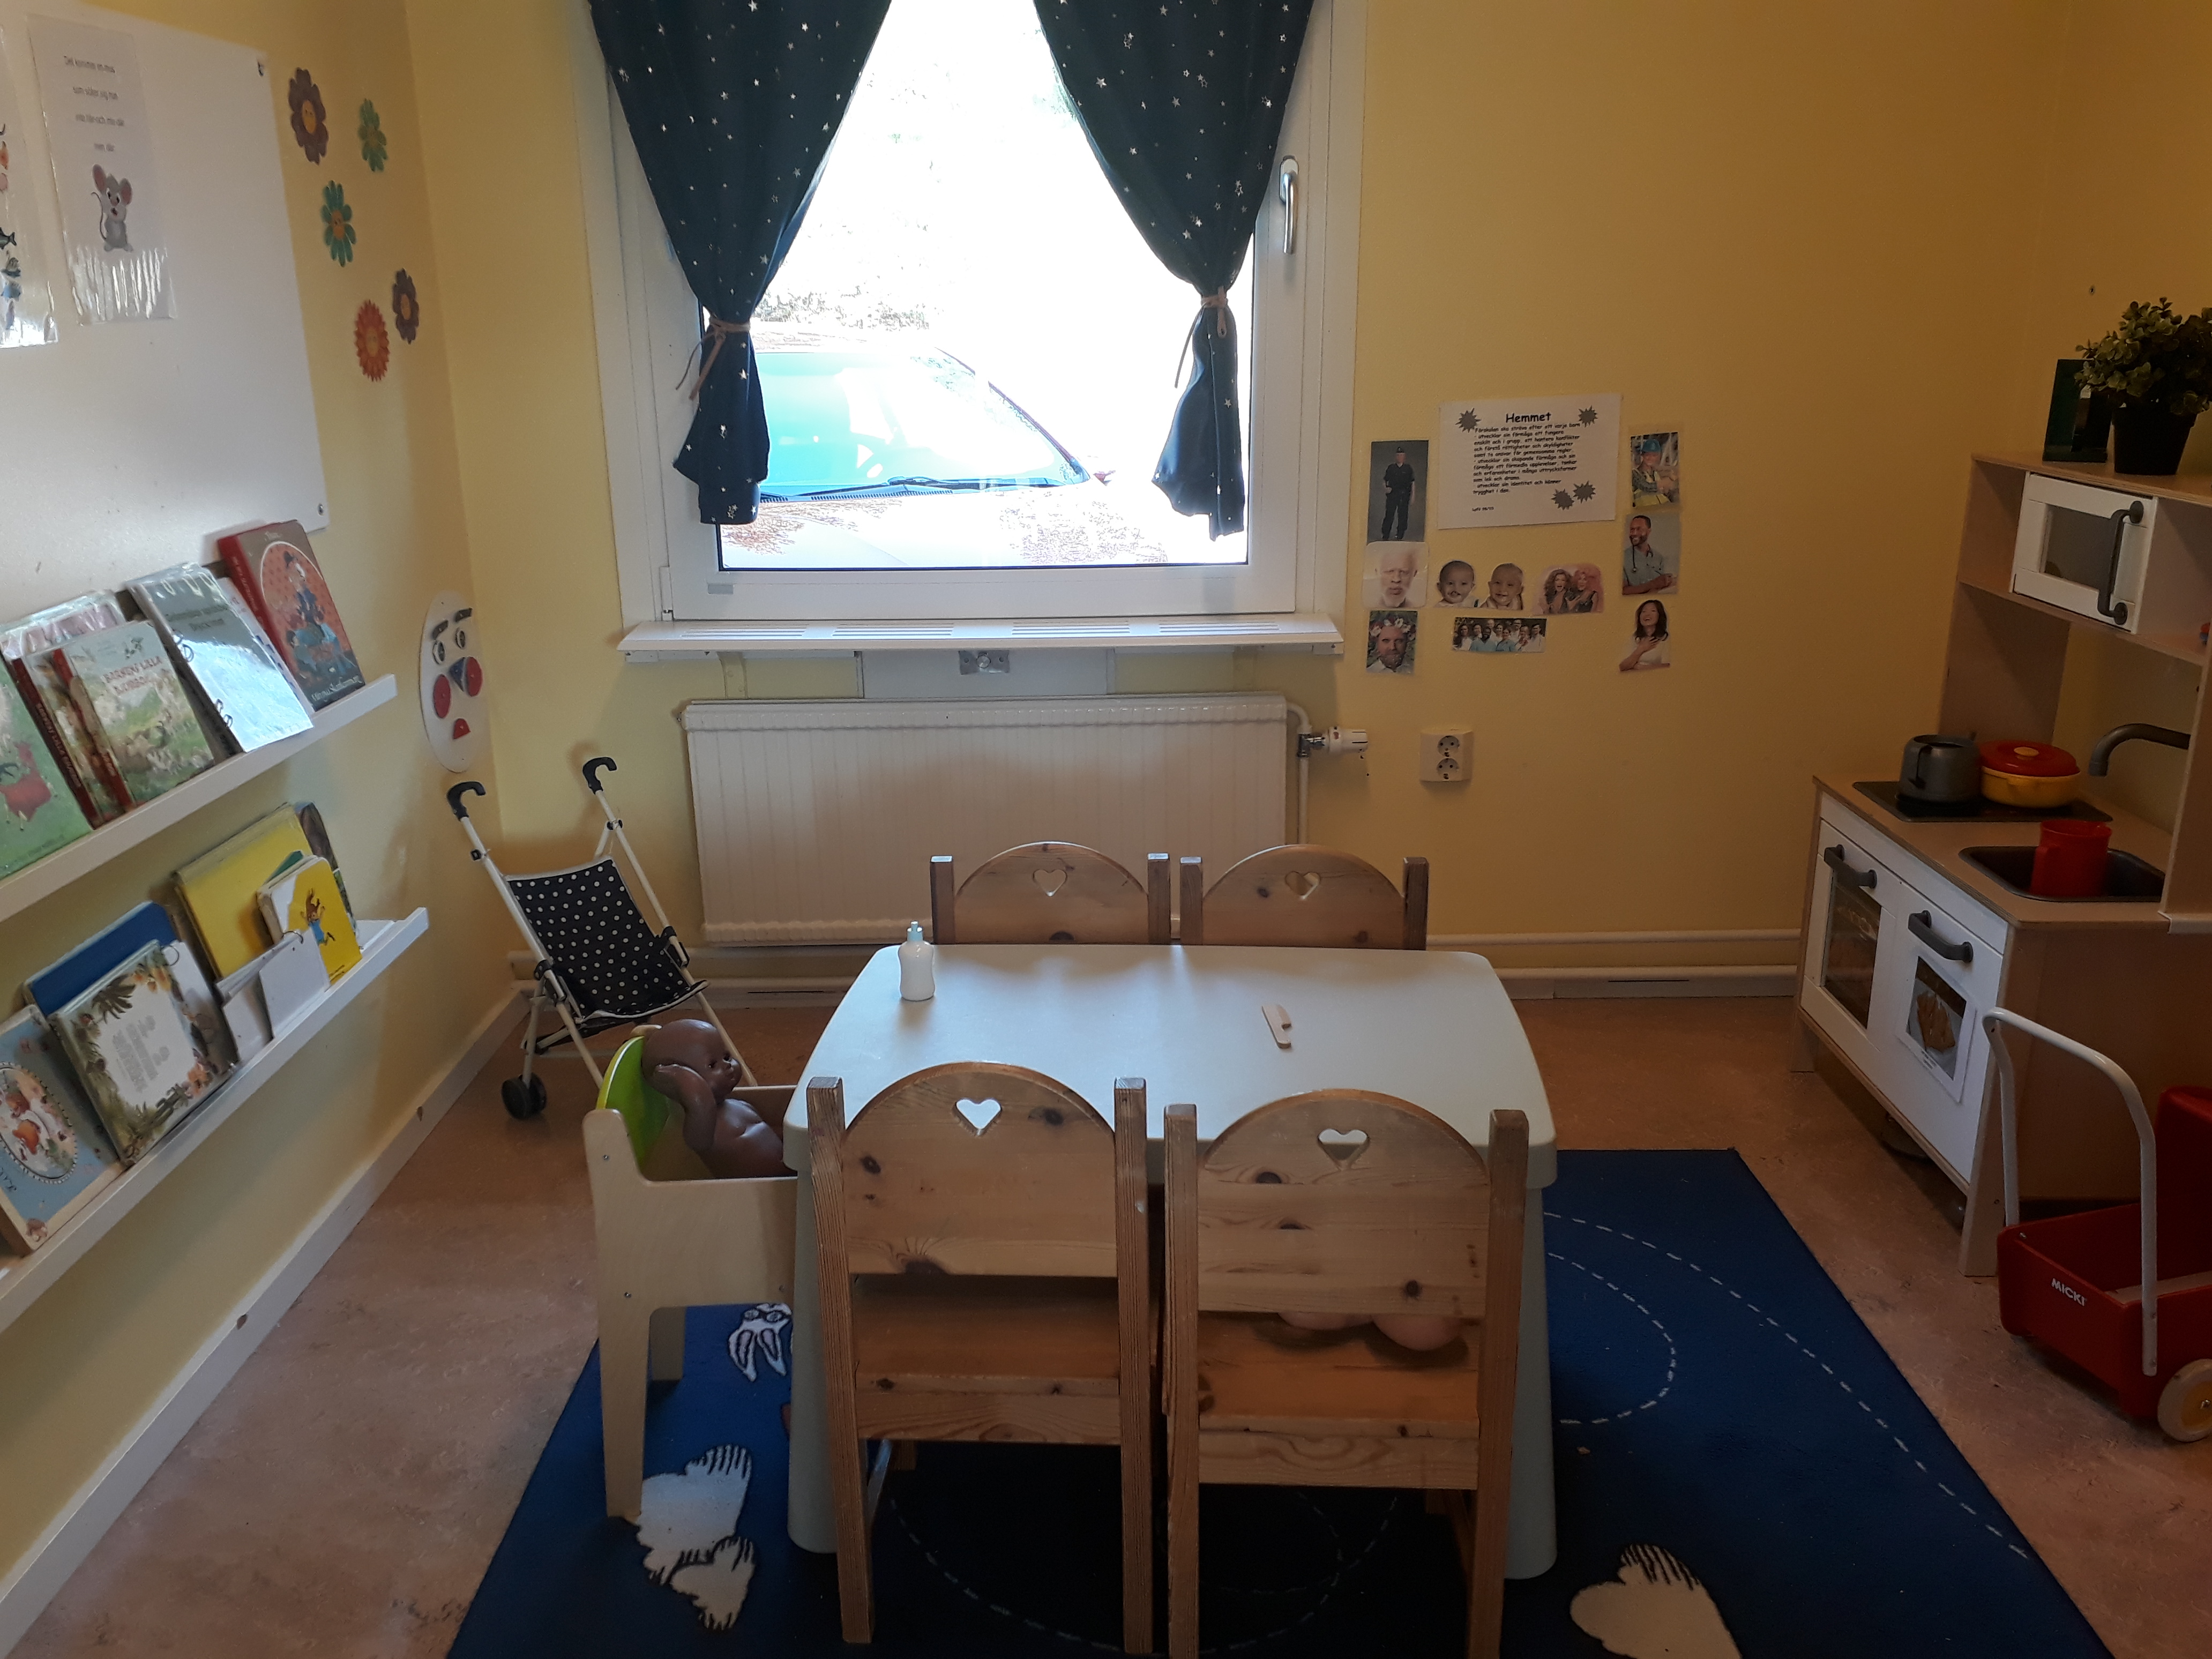 En leksaksspis står efter ena väggen. Ett fyrkantigt bord med stolar står på en blå matta mitt i rummet. En barnstol med en docka står också vid bordet. På väggen sitter en hylla med böcker.